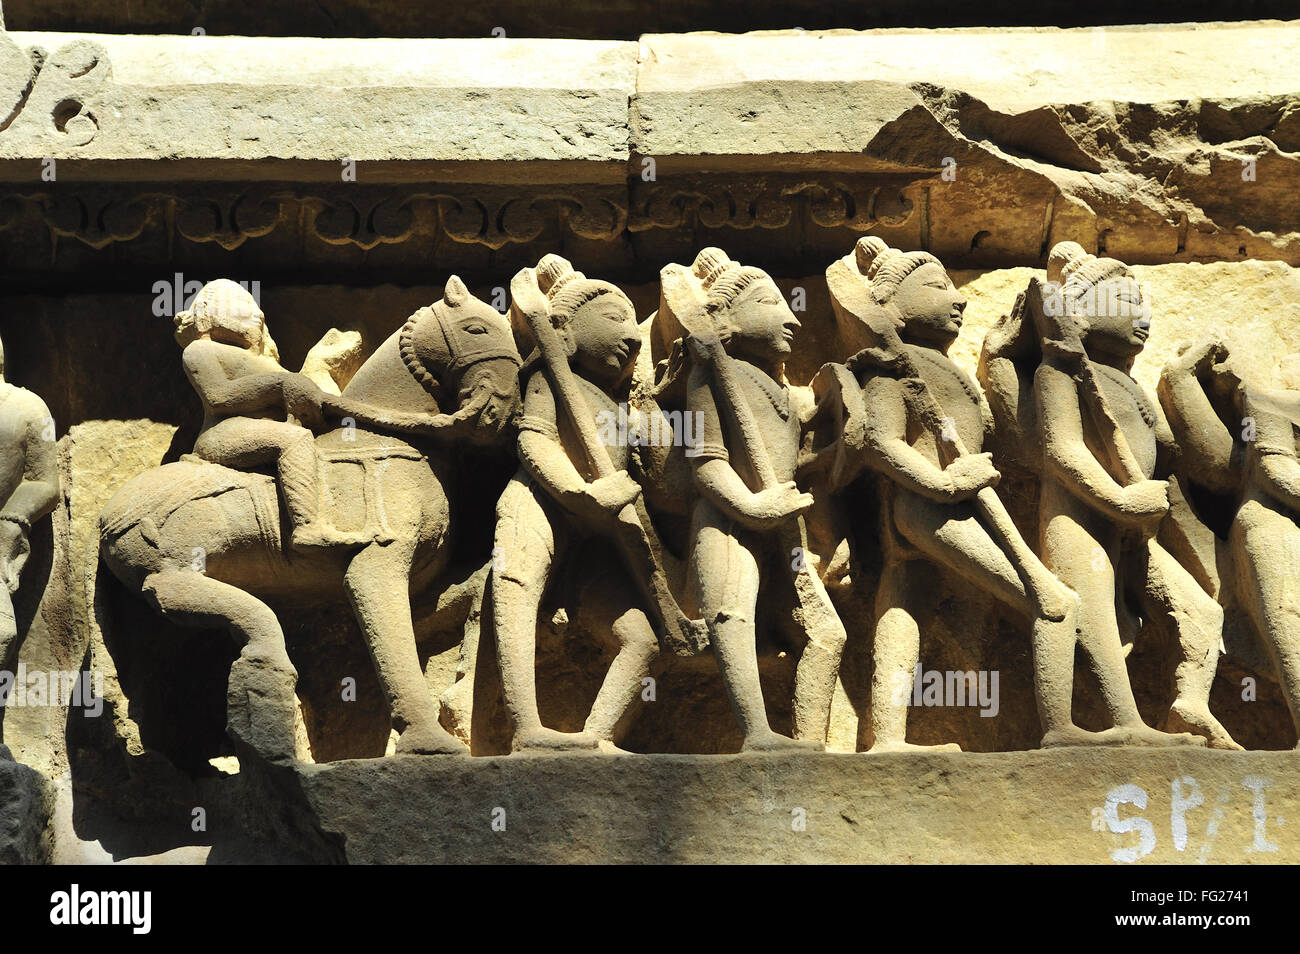 La bataille le lakshmana temple Khajuraho Madhya Pradesh, Inde Banque D'Images